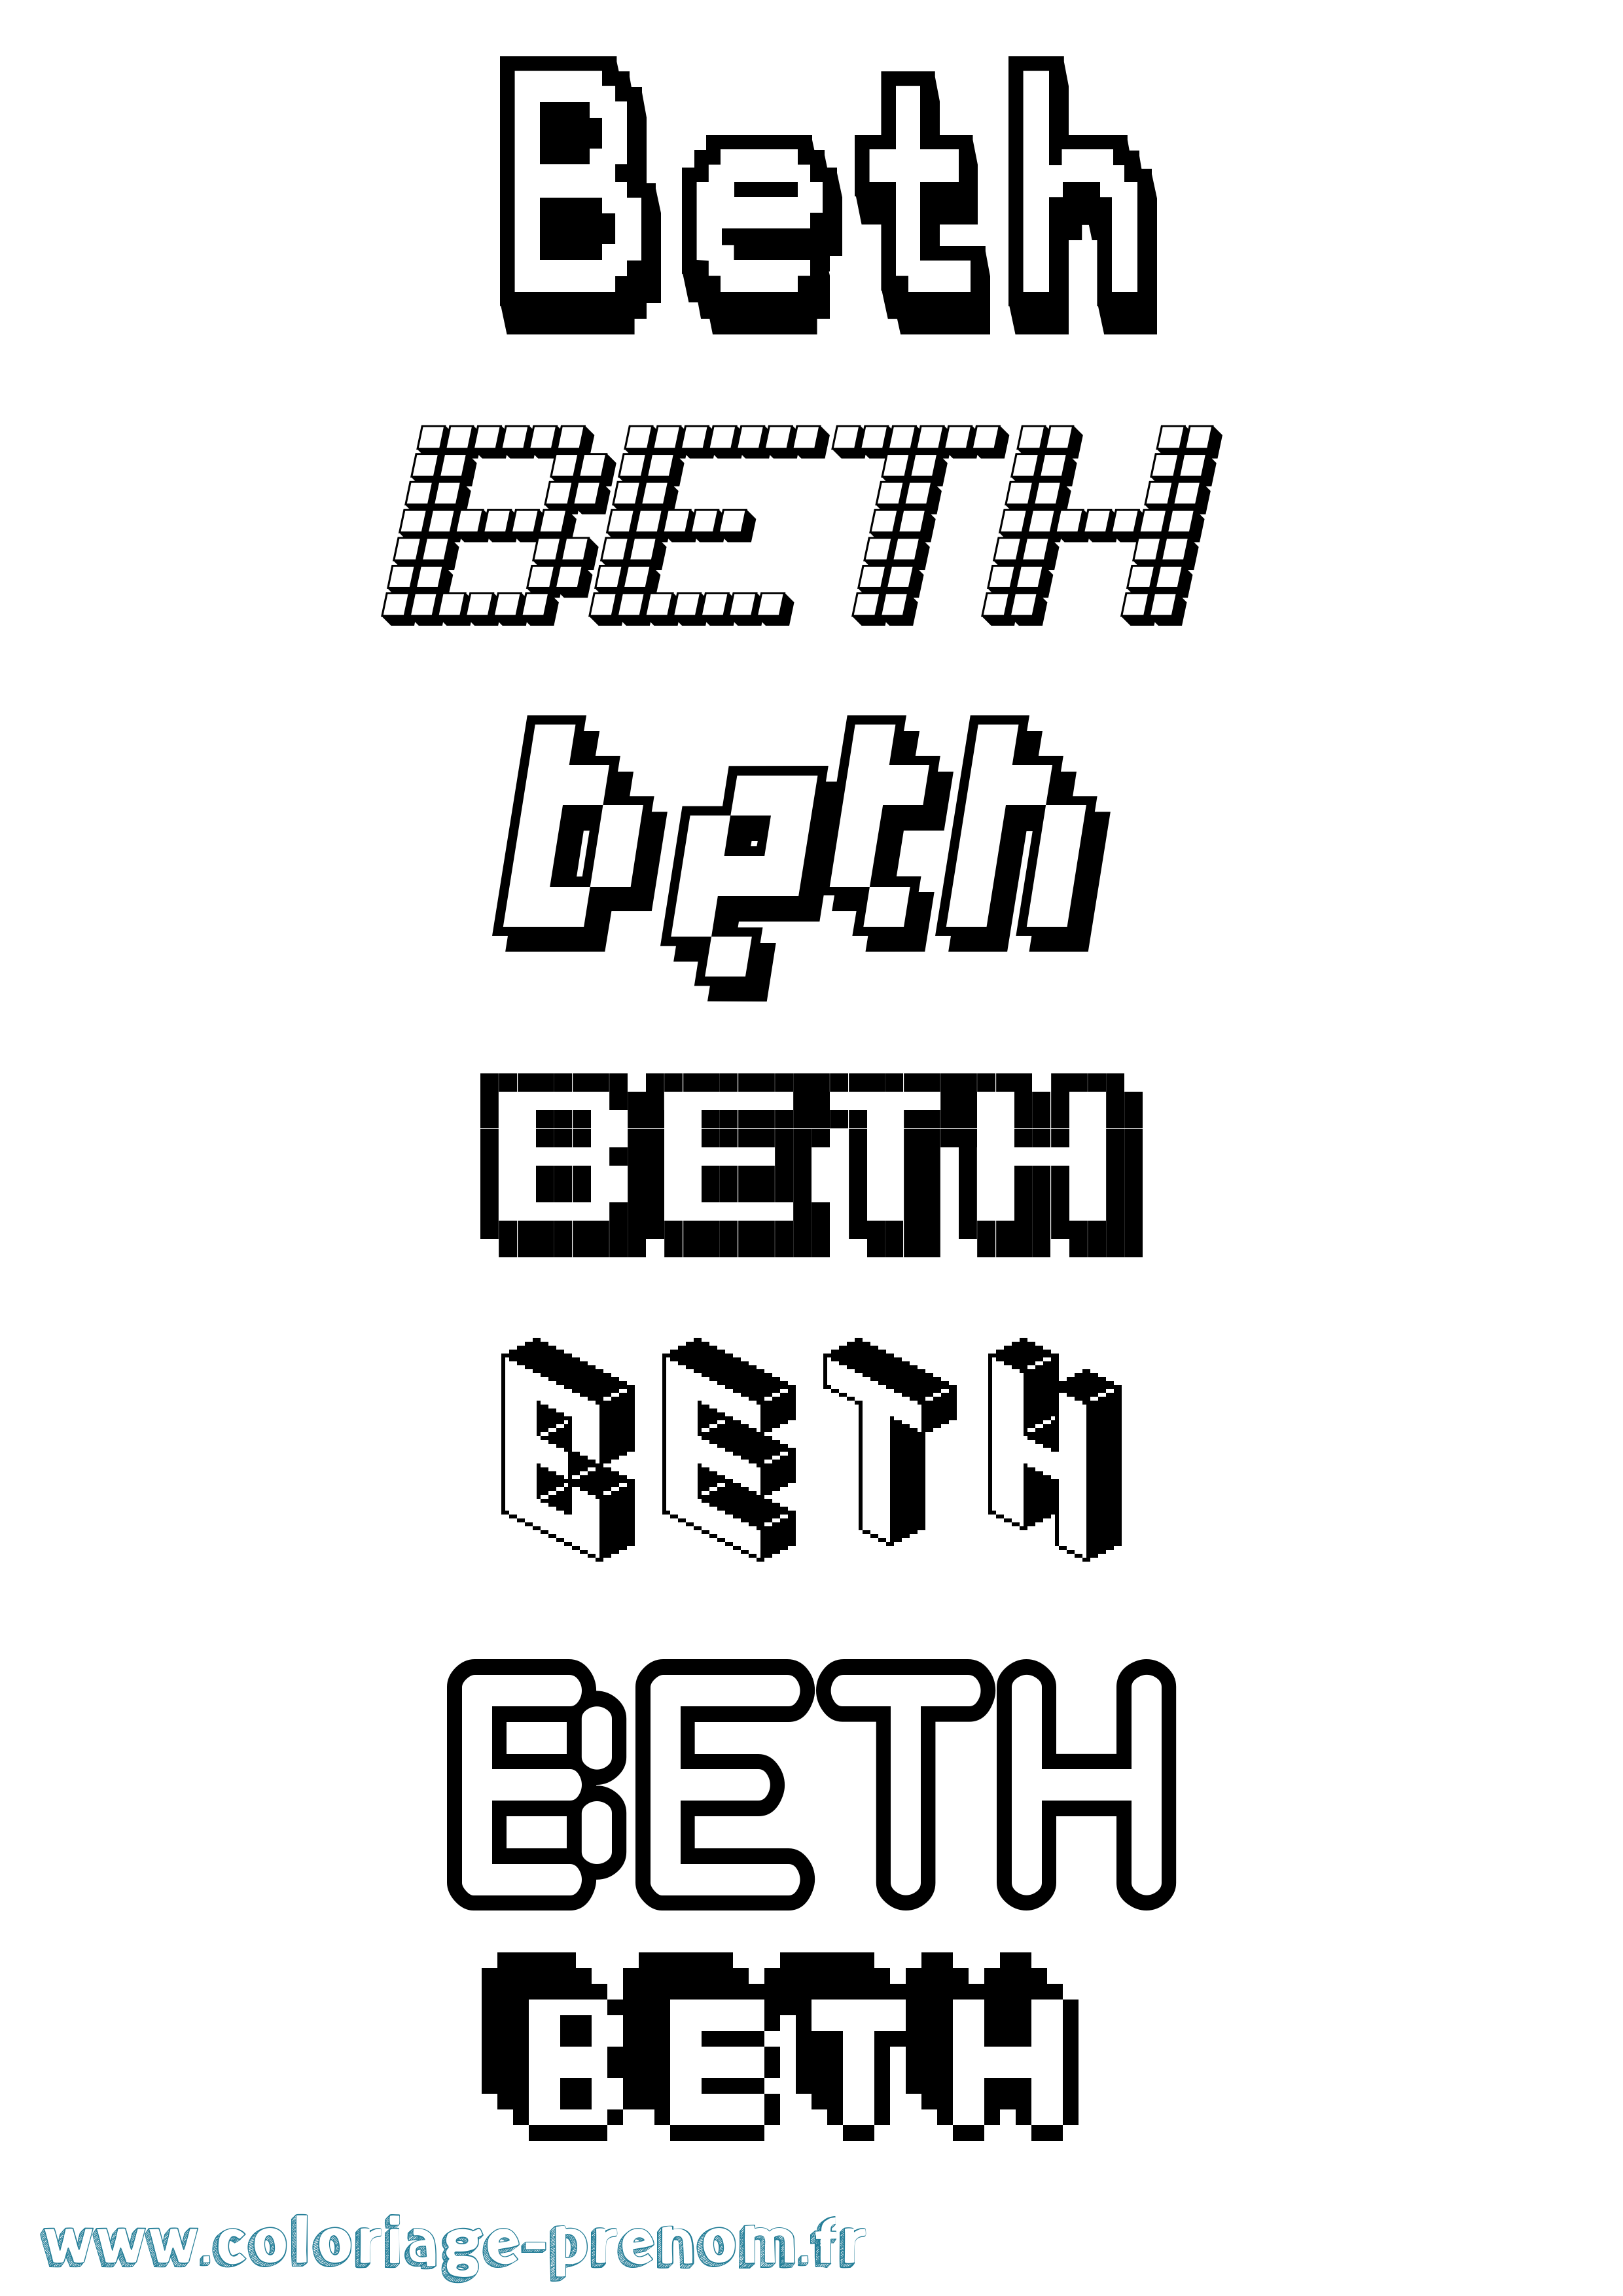 Coloriage prénom Beth Pixel